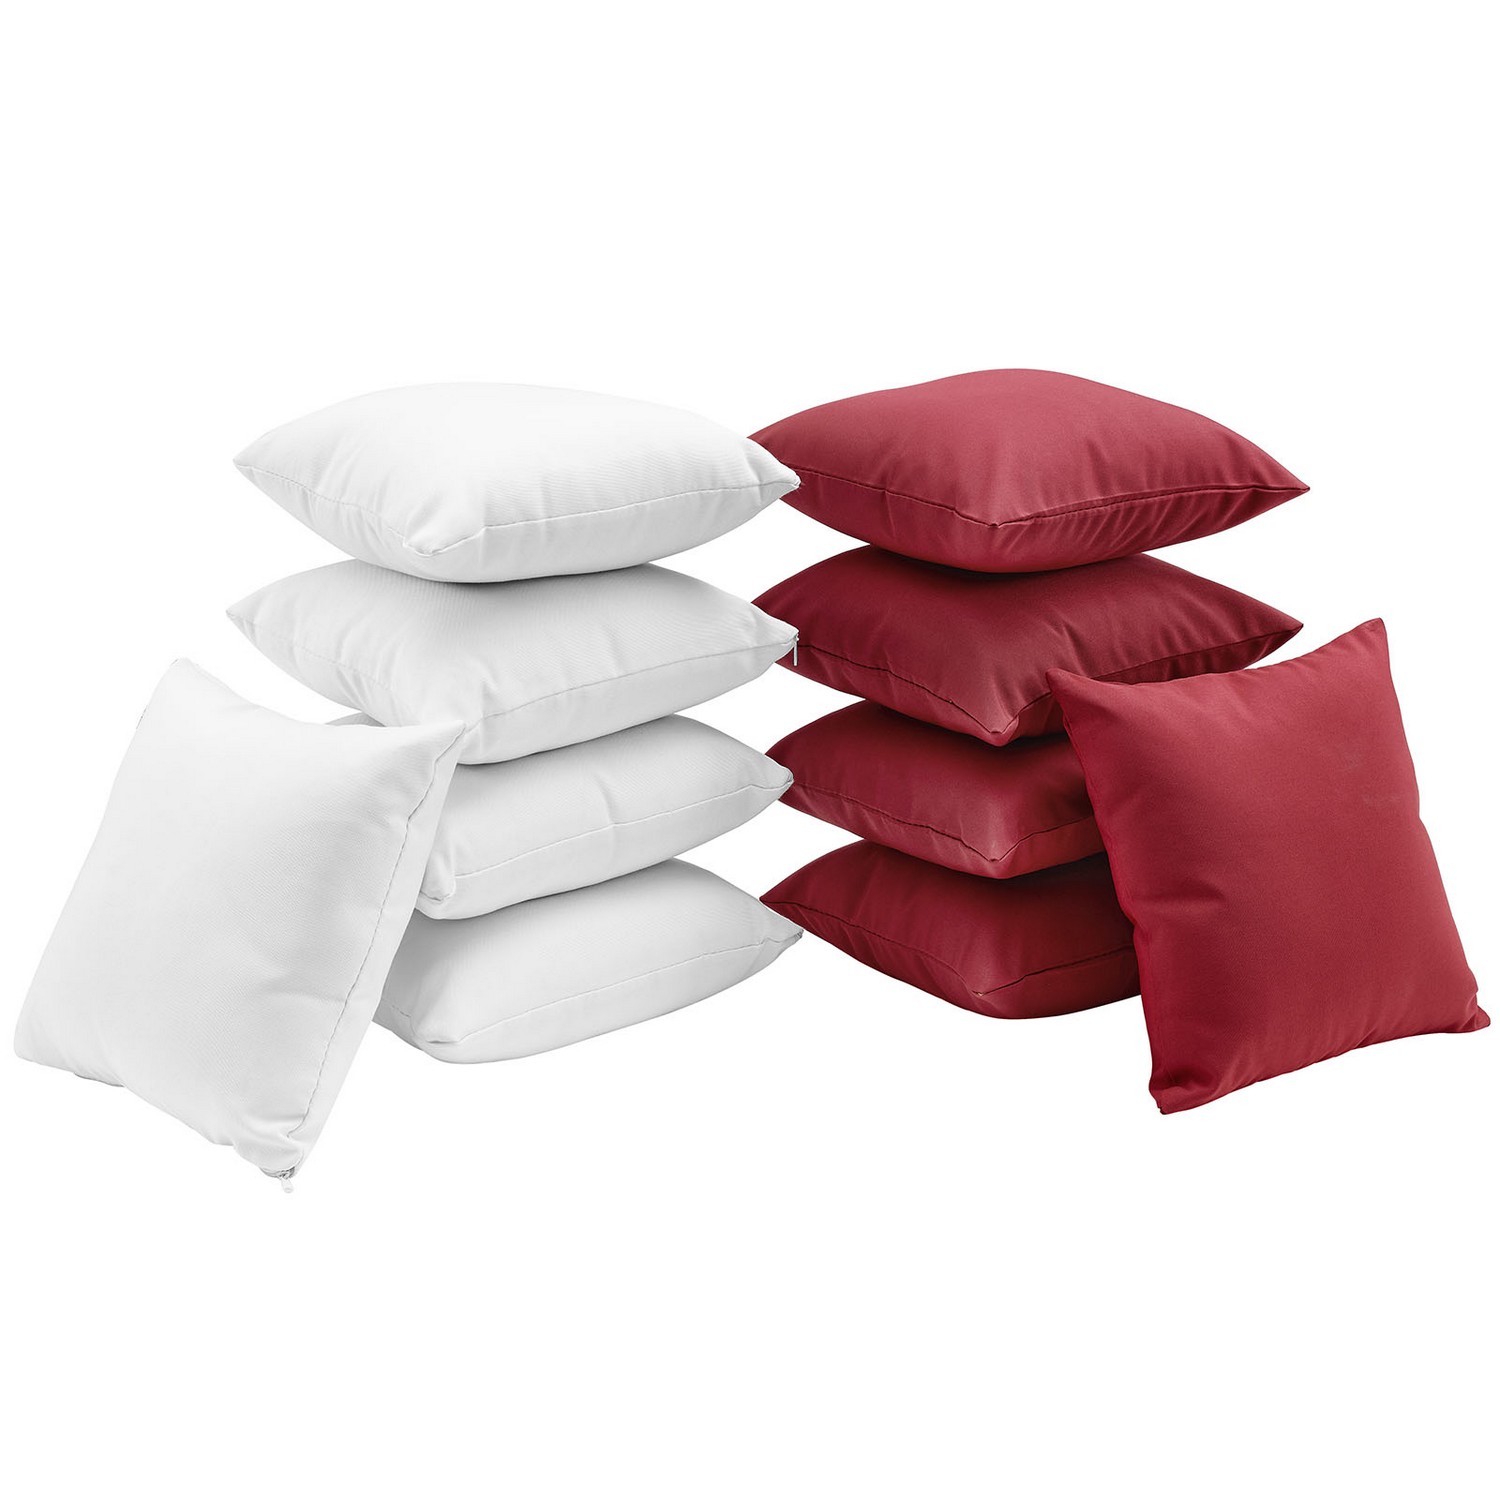 Modway Gather Ten Piece Pillow Set - White/Red